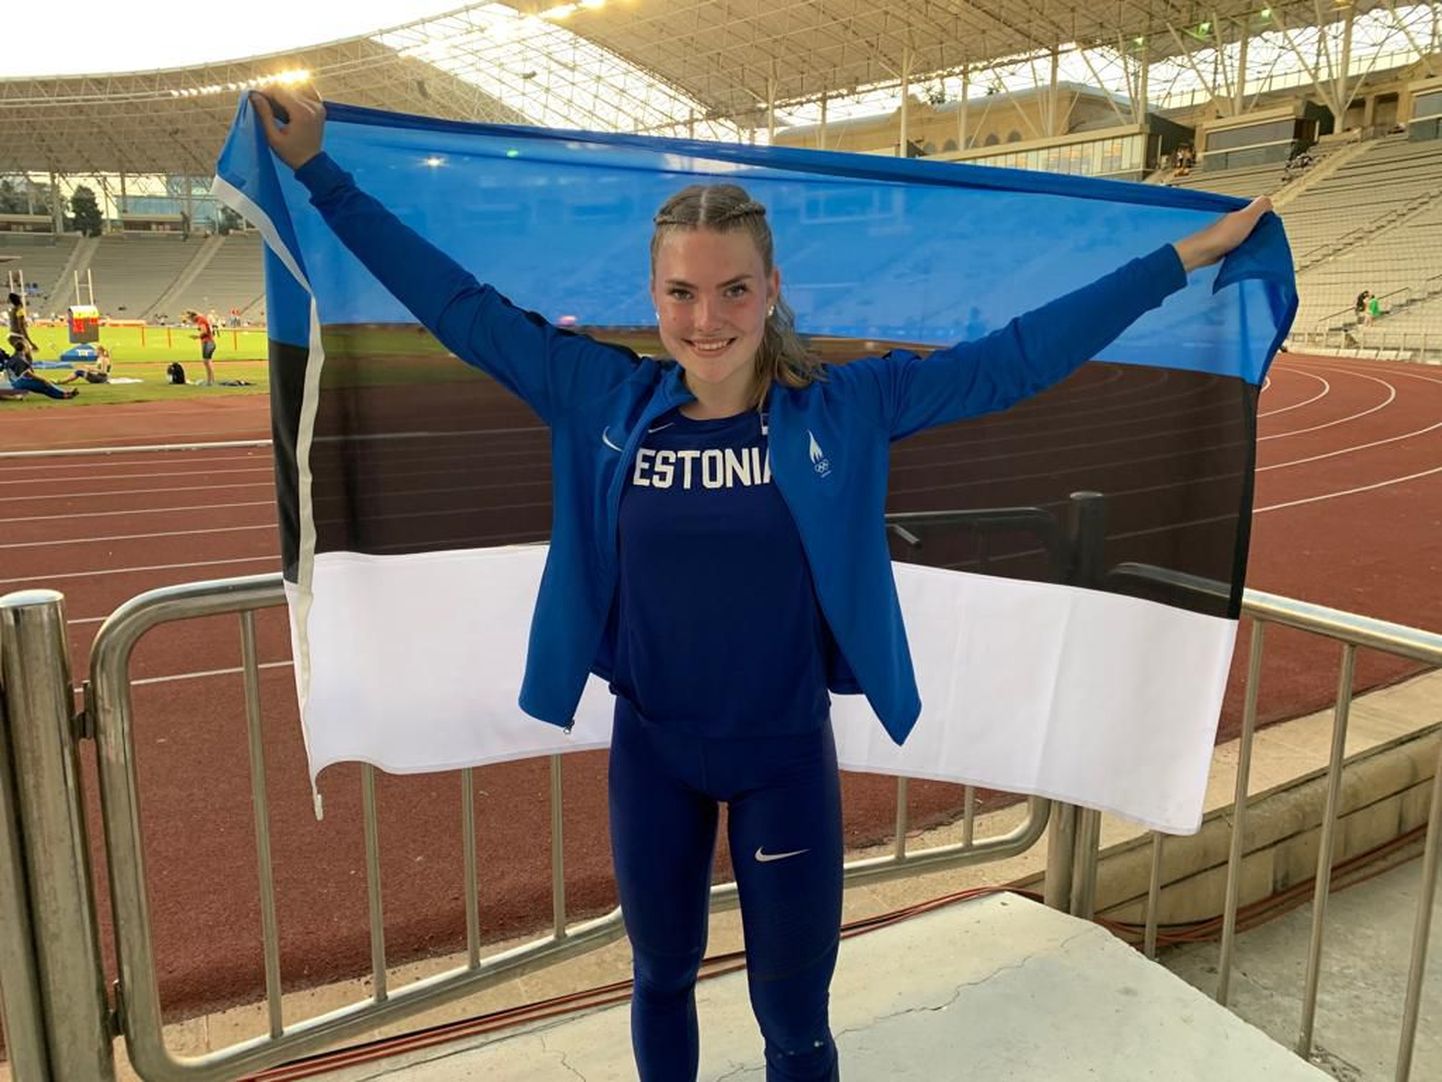 Пиппи Лотта Энок с флагом Эстонии после успешного соревнования на стадионе в Баку.